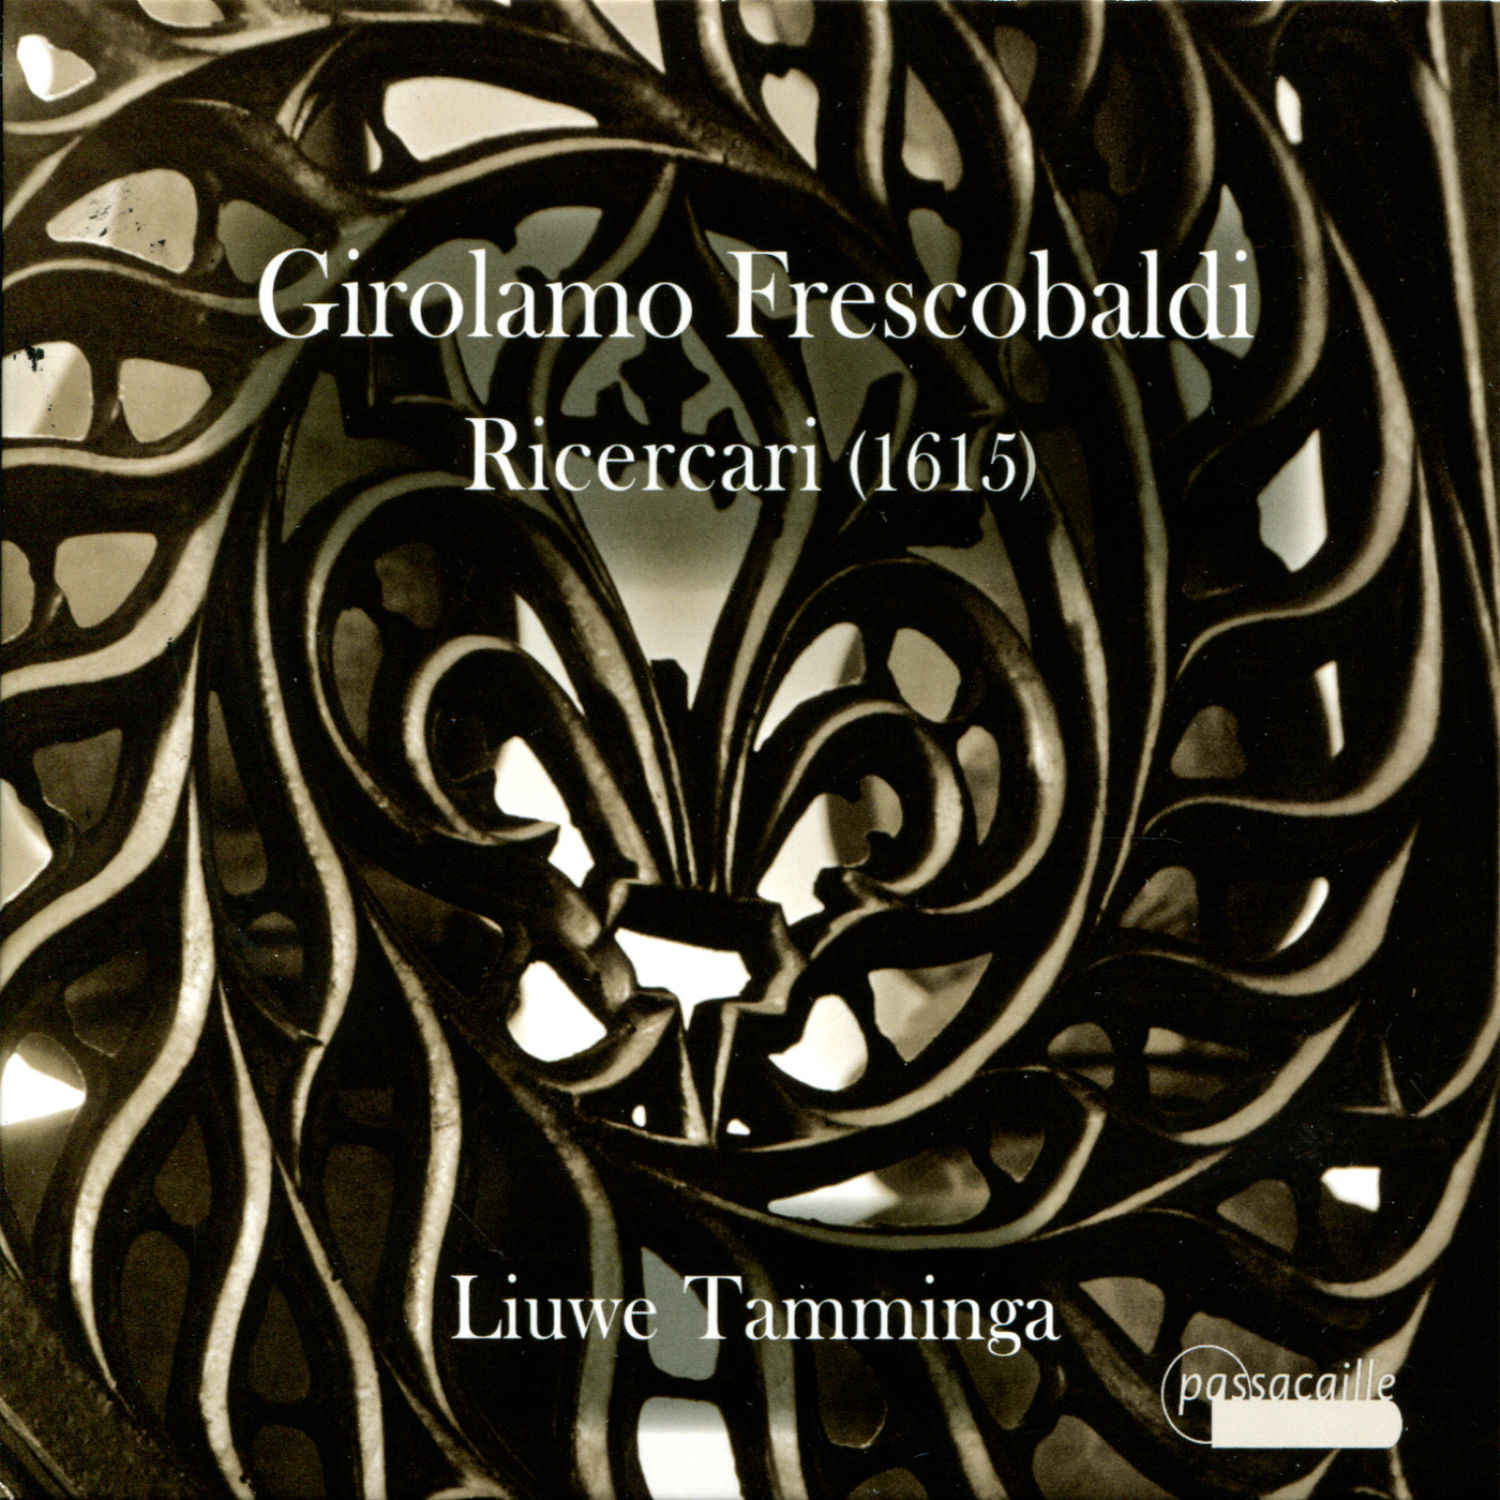 Frescobaldi - Ricercari, 1615 - Liuwe Tamminga, organ